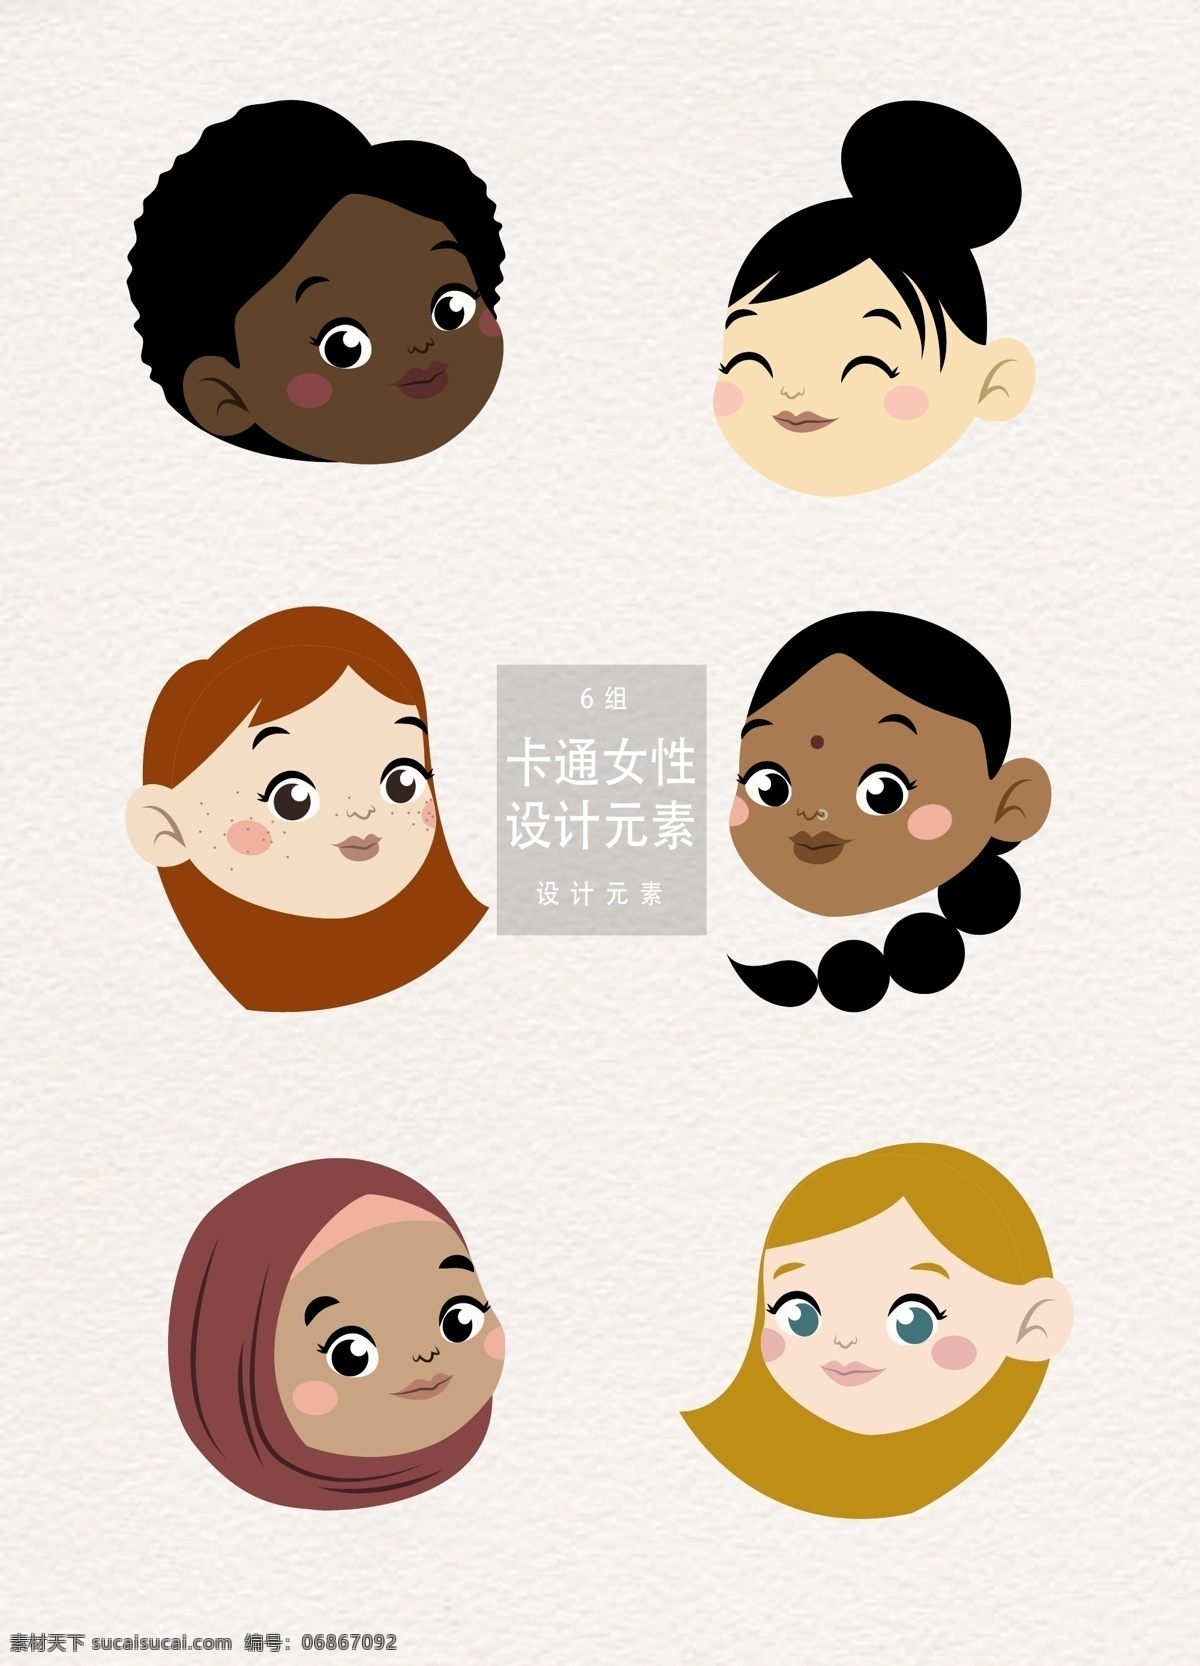 卡通 各国 女性 头像 元素 设计元素 人物 卡通人物 国际 各国女性头像 卡通女性 女性头像